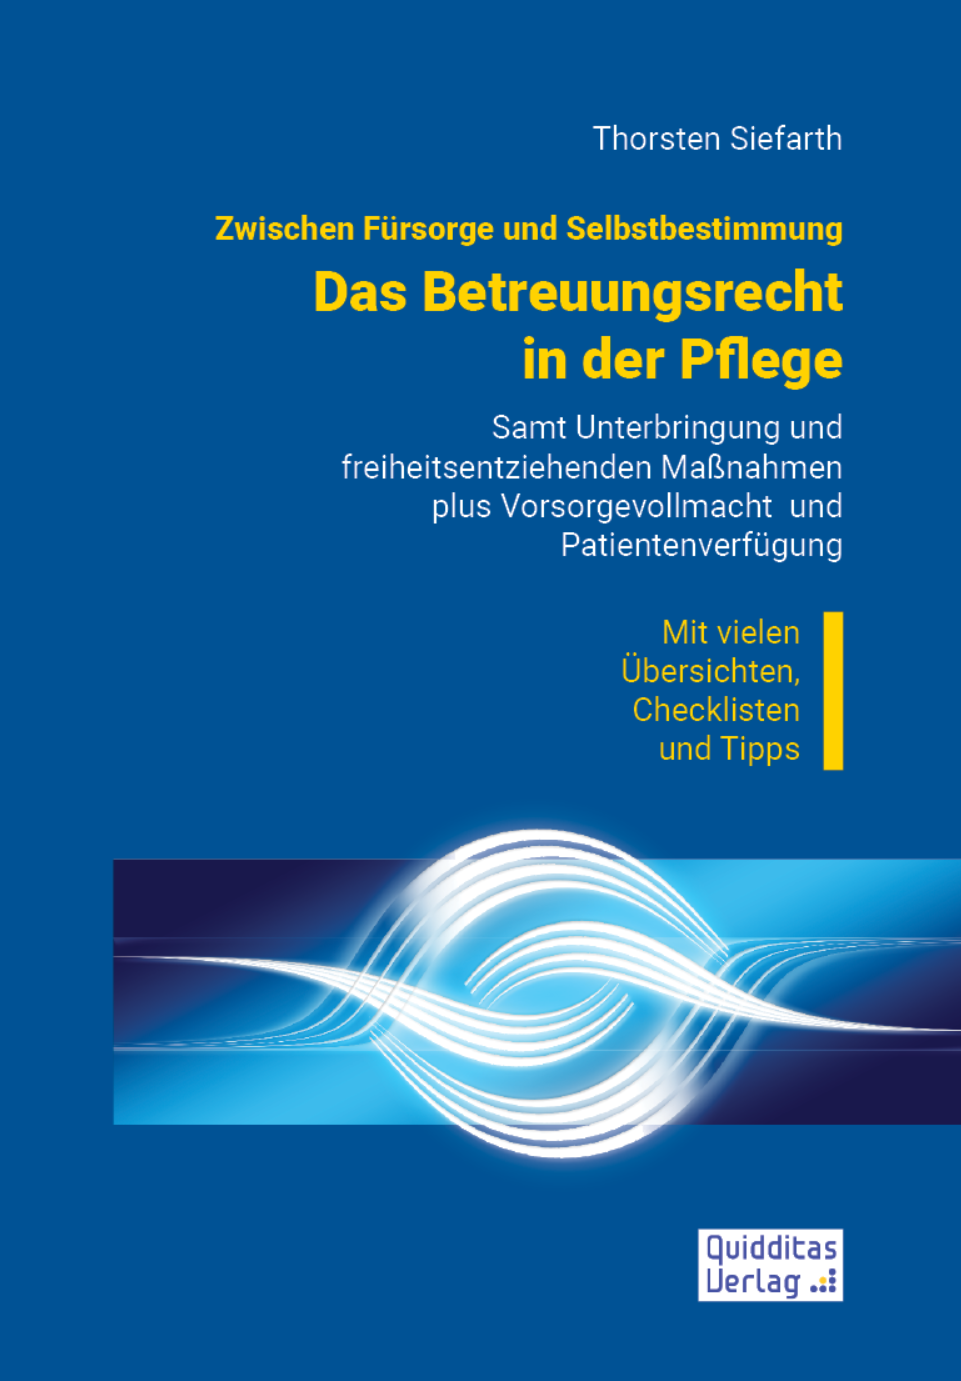 Cover des Buches "Das Betreuungsrecht in der Pflege"